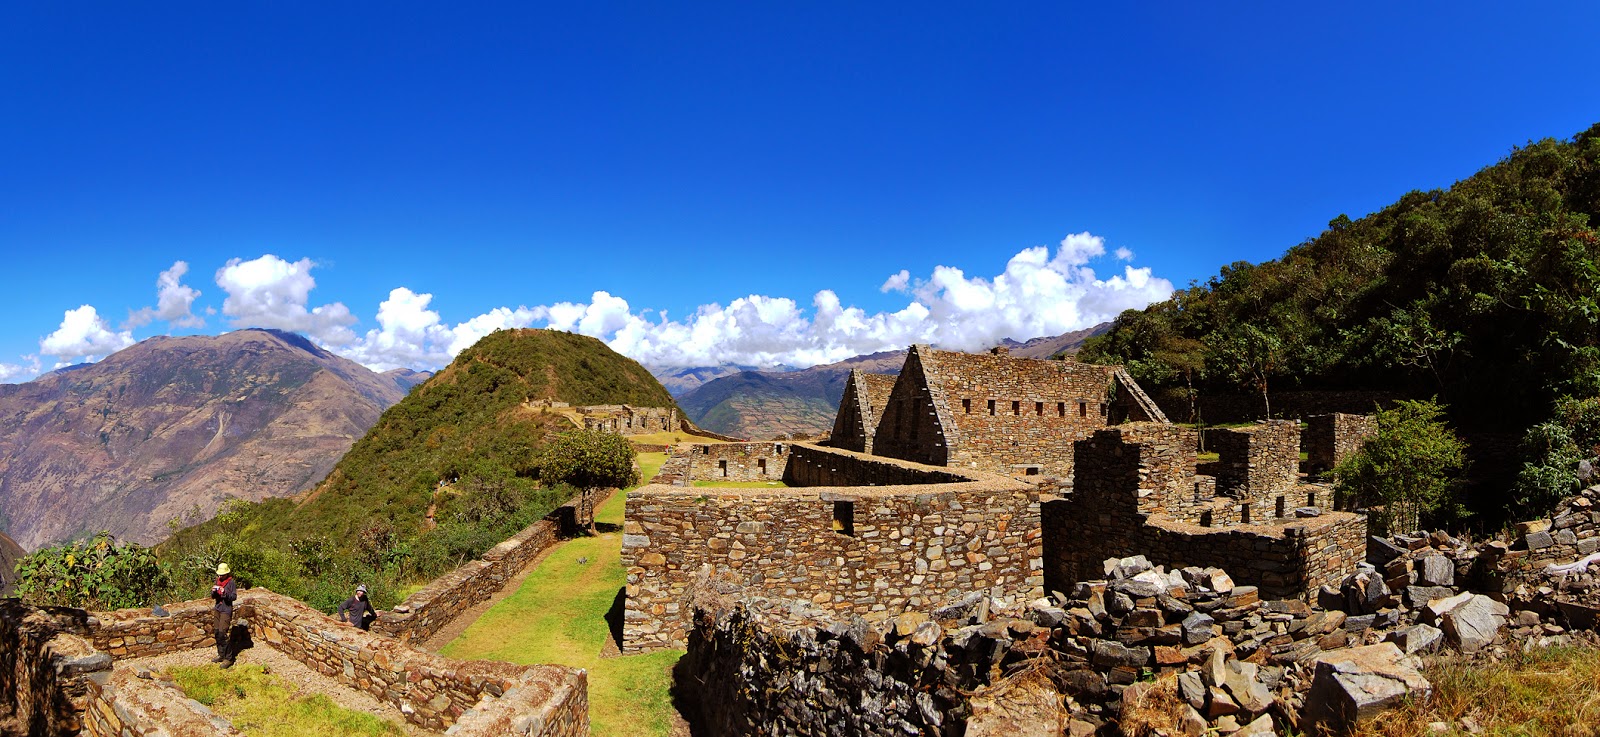 Paisajes espectaculares en las ruinas de Choquequirao en Perú